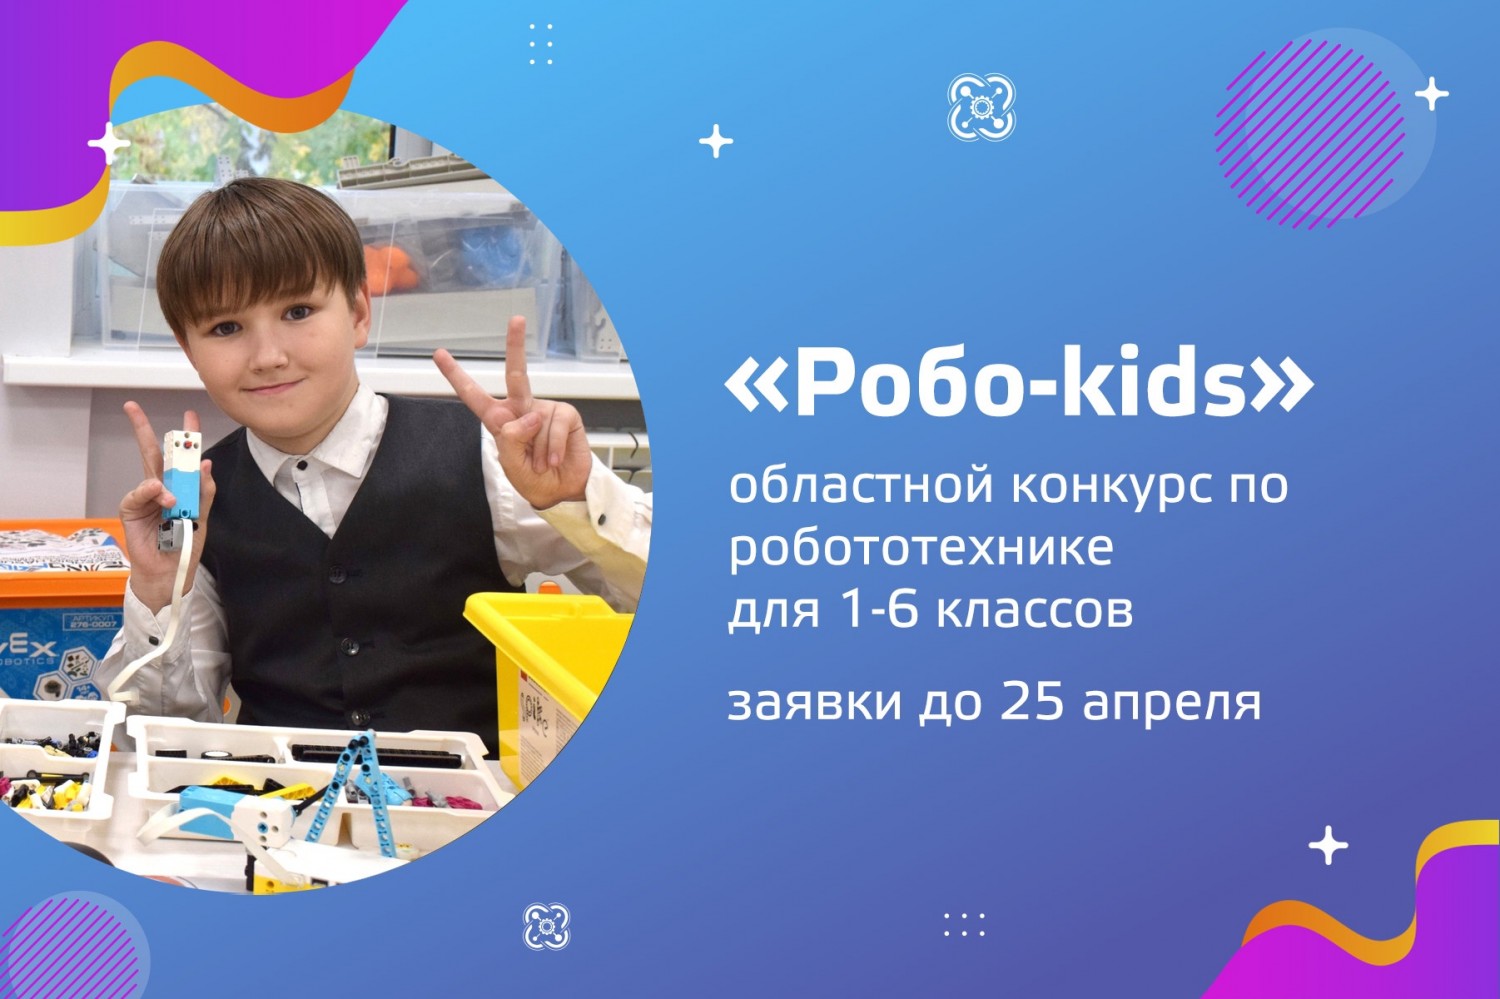 Приглашаем к участию в областном конкурсе «Robo-kids»